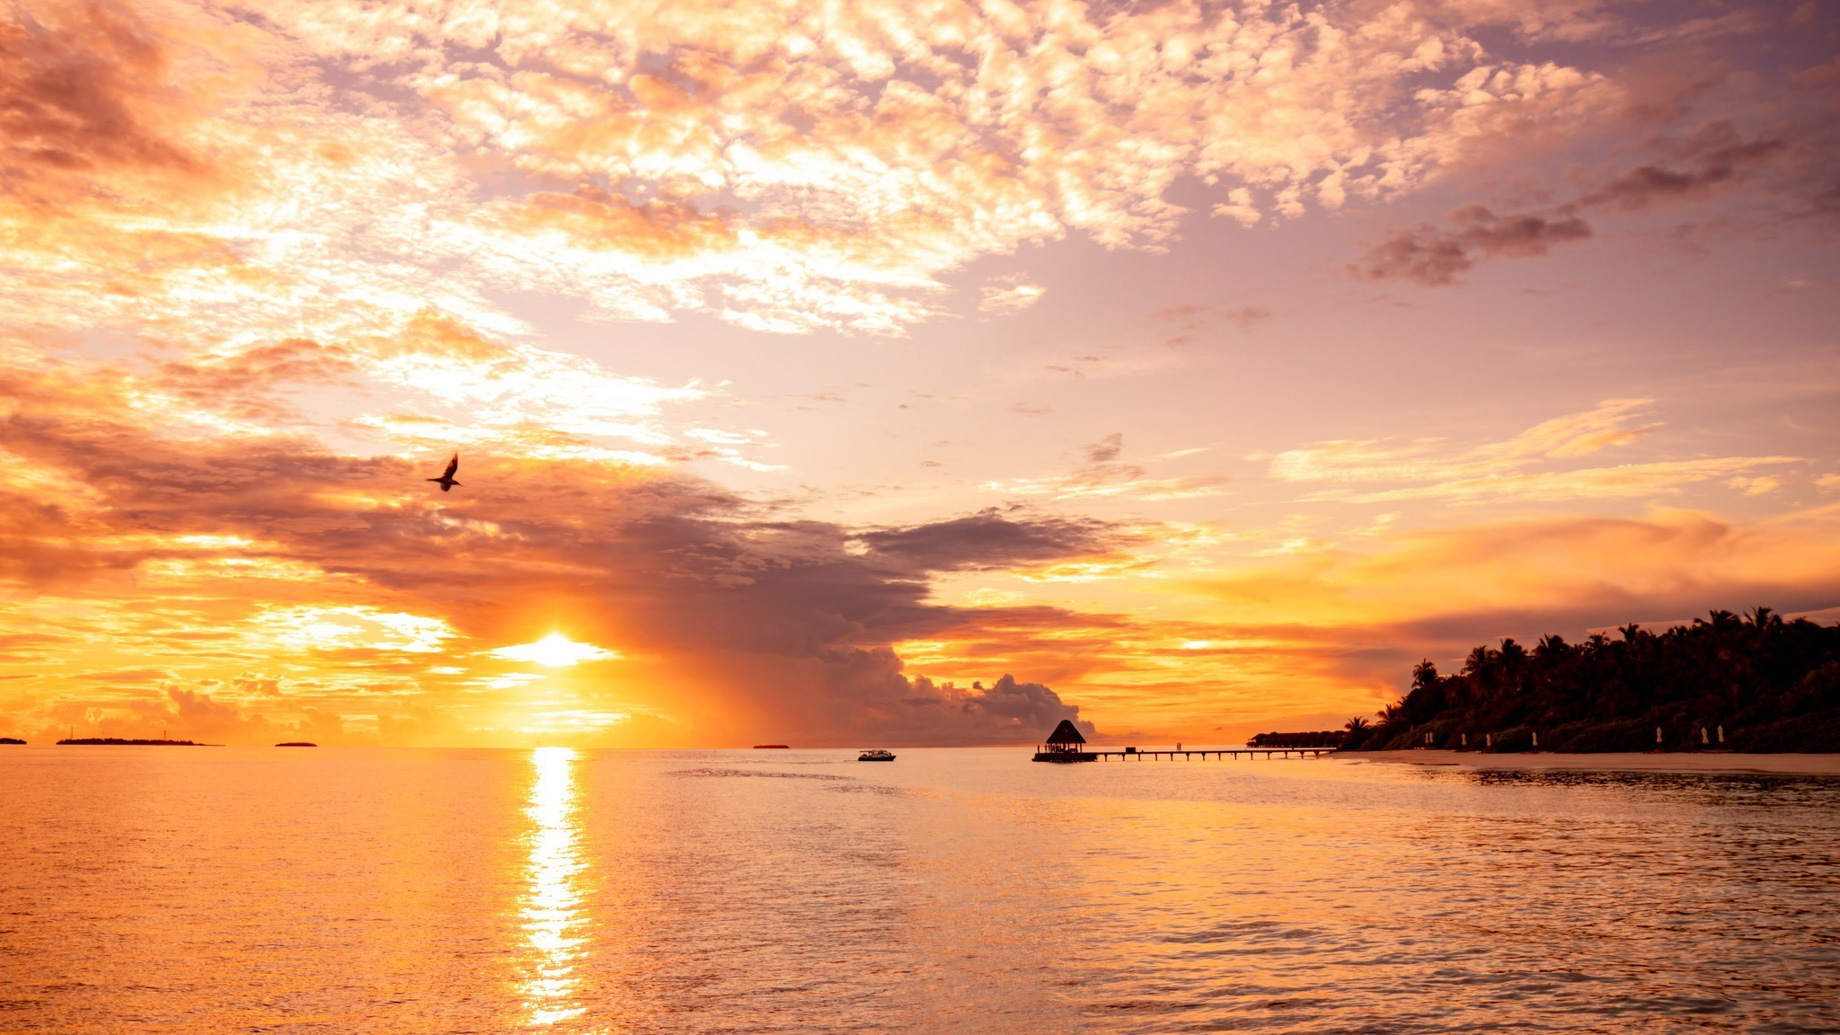 Anantara Kihavah Maldives Villas Resort - Baa Atoll, Maldives - Ocean View Sunset